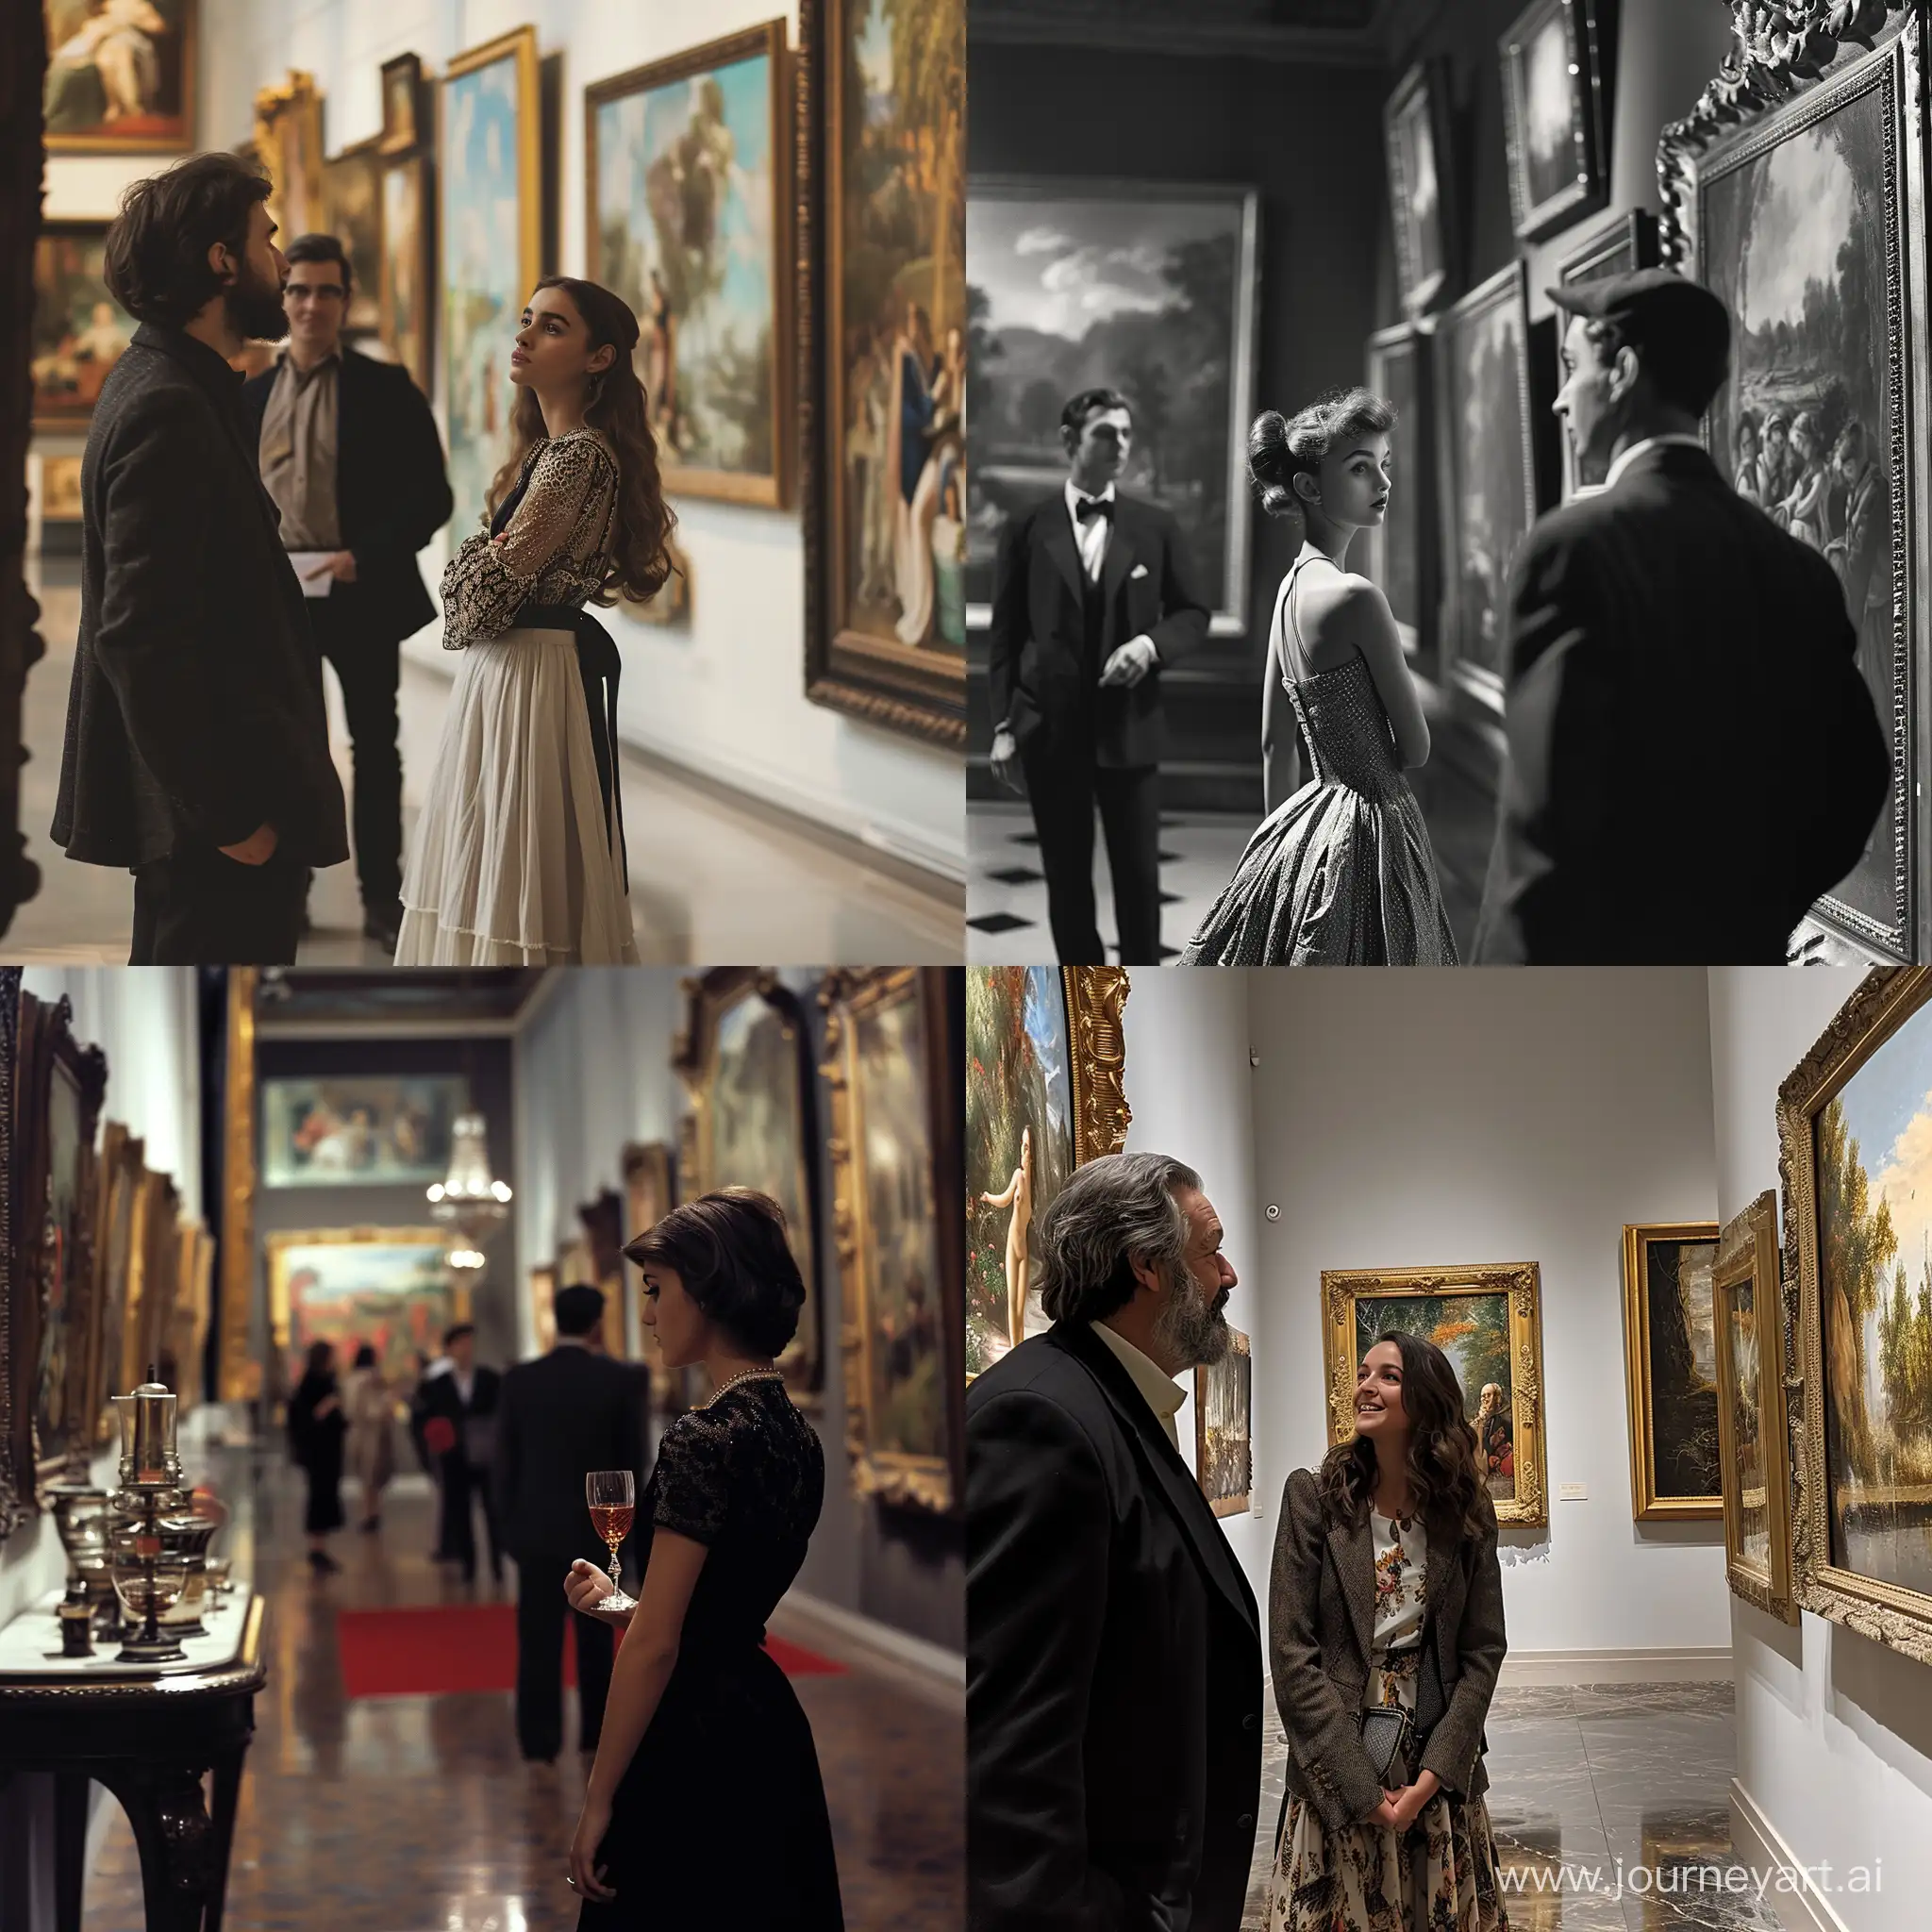 фото изящной девушки в картинной галлерее рядом с красивой живописью и богатым мужчиной
